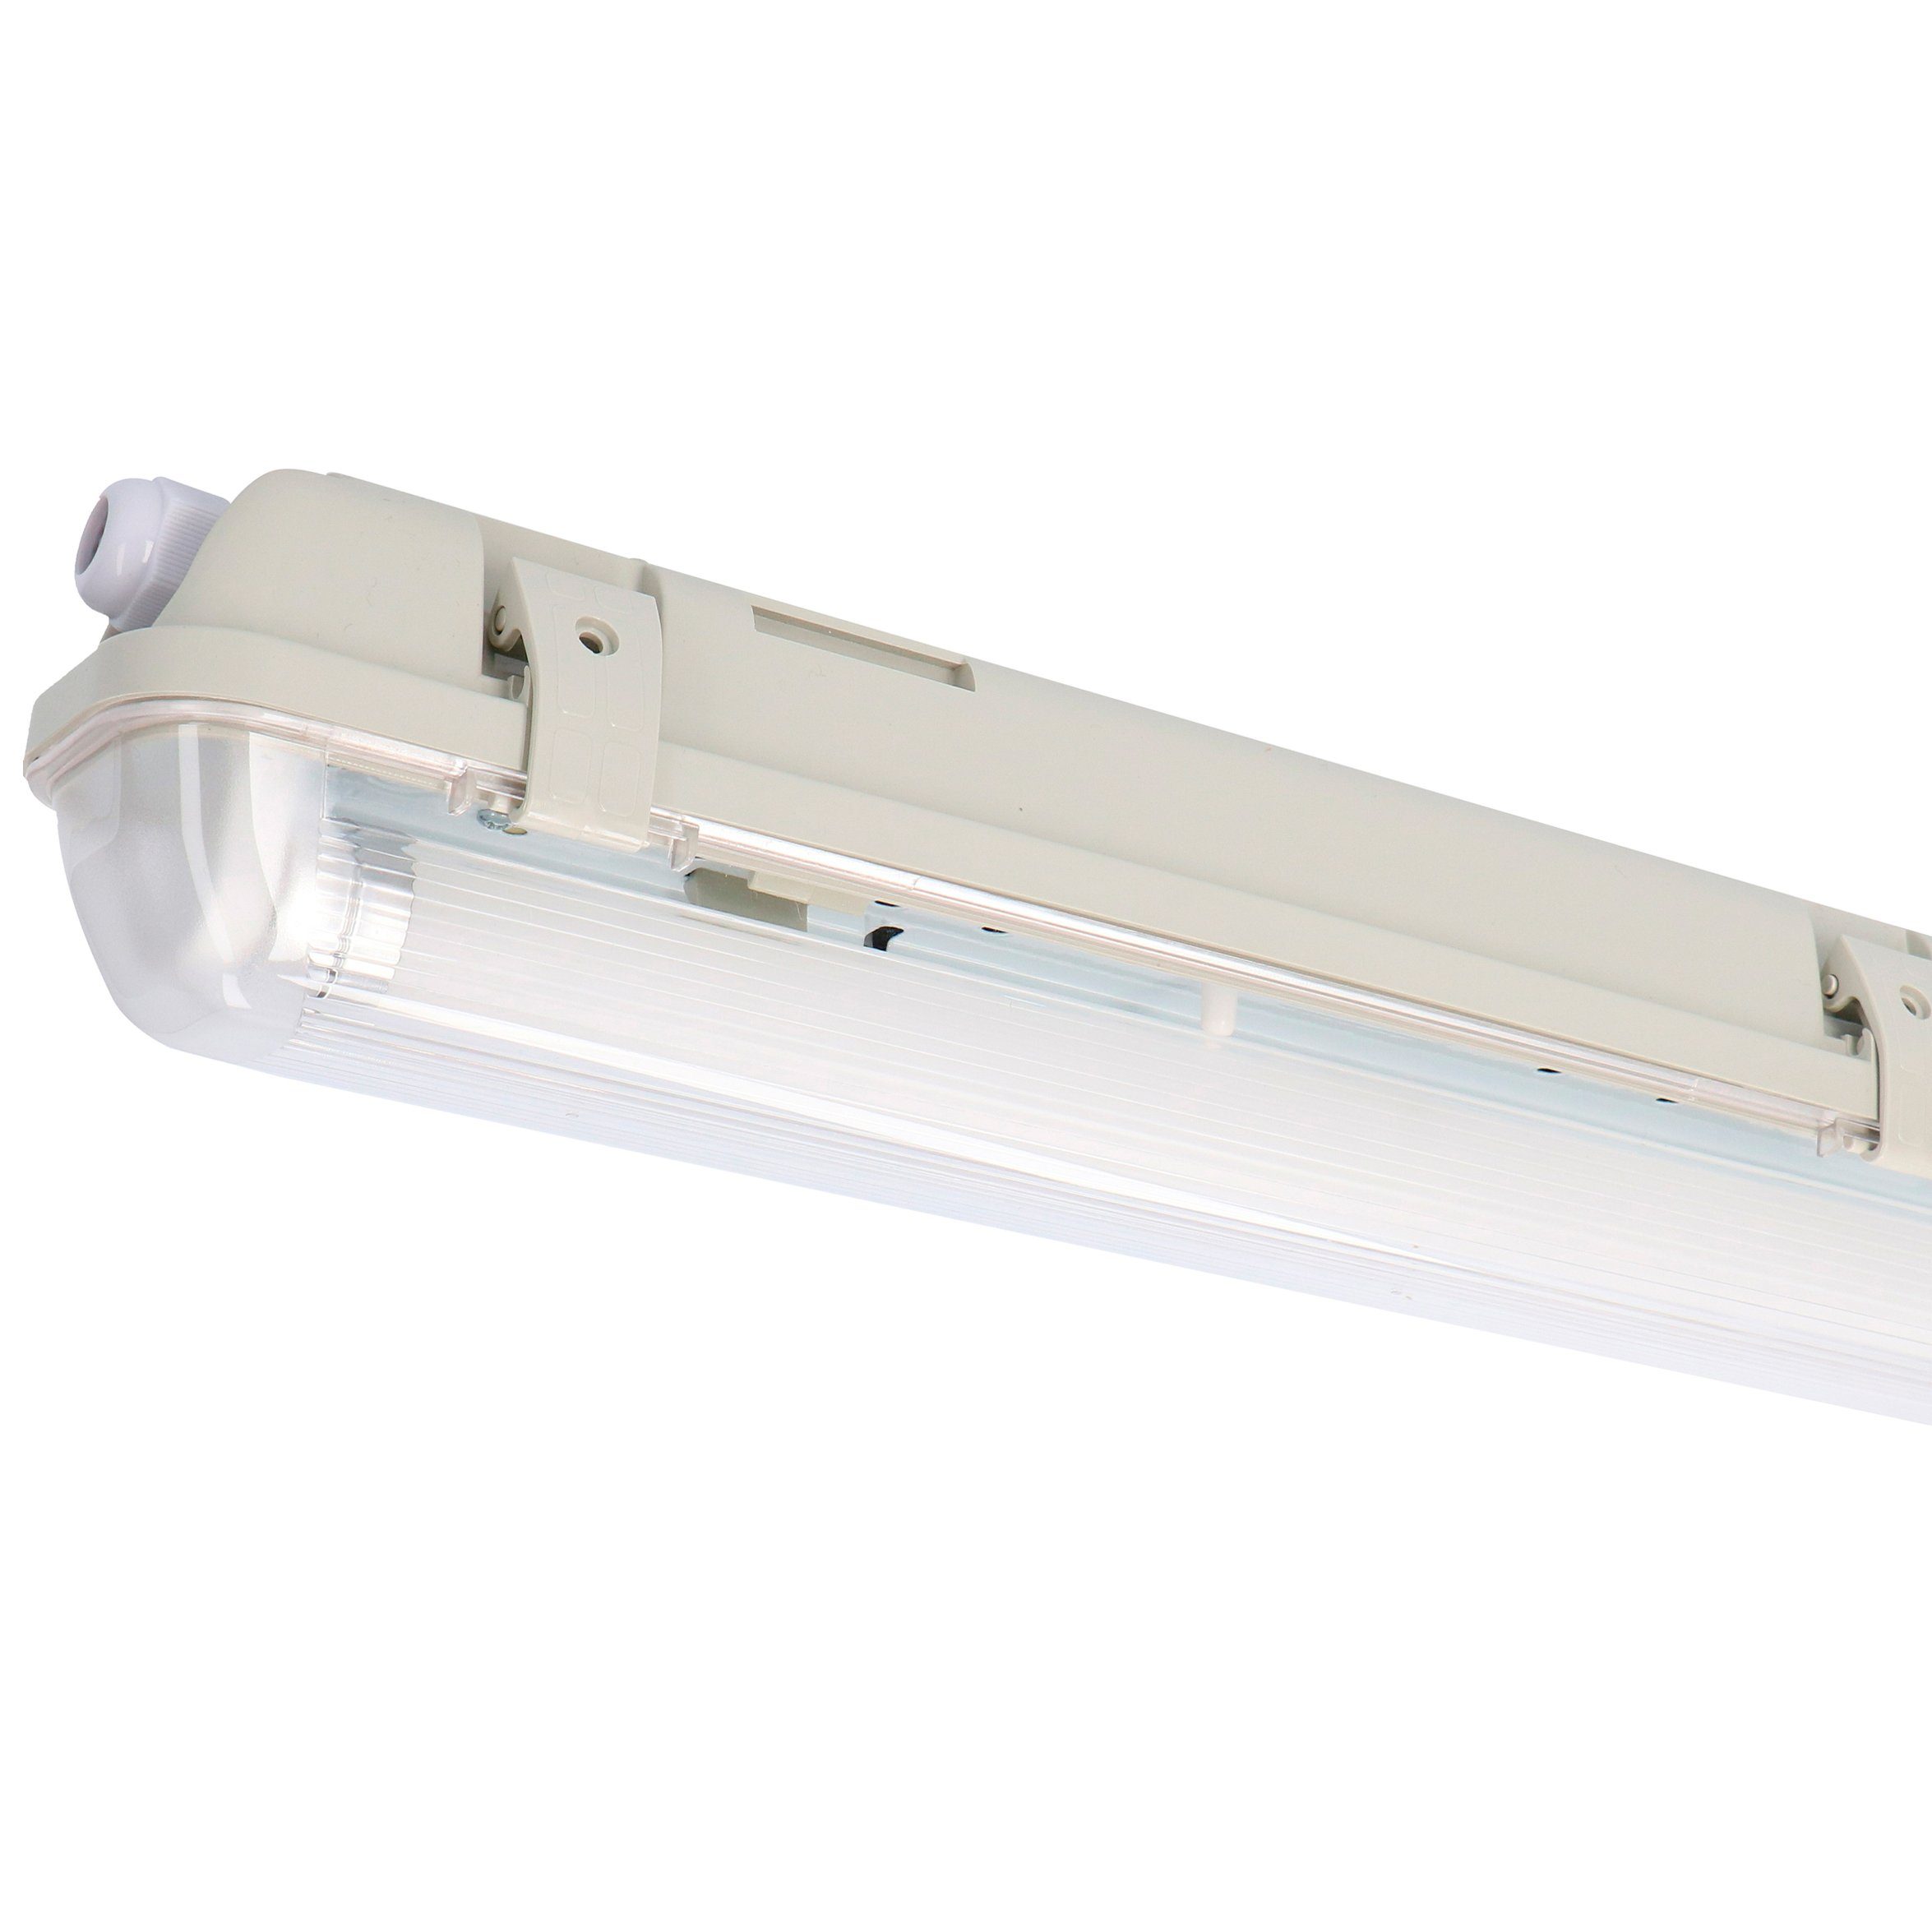 2401202_01 HF-Bewegungsmelder LED LED's mit Feuchtraumleuchte, 14W light 120 und neutralweiß cm Deckenleuchte LED, LED-Röhre IP65